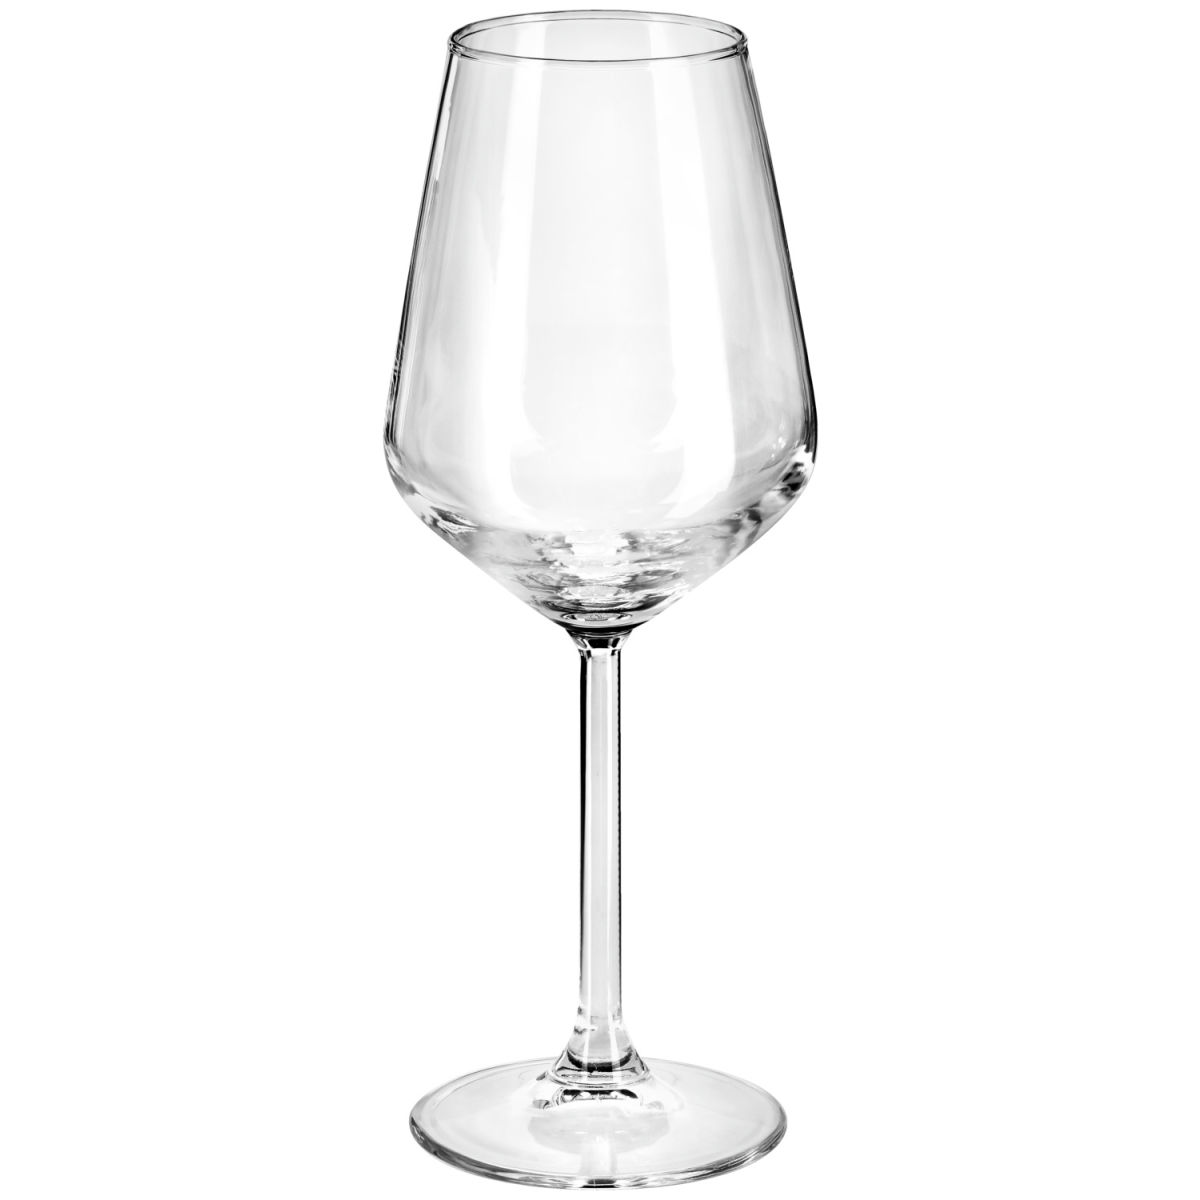 Pasabahçe Witte wijnglas Allegra; 350ml, 5.7x21.7 cm (ØxH); transparant; 6 stuk / verpakking